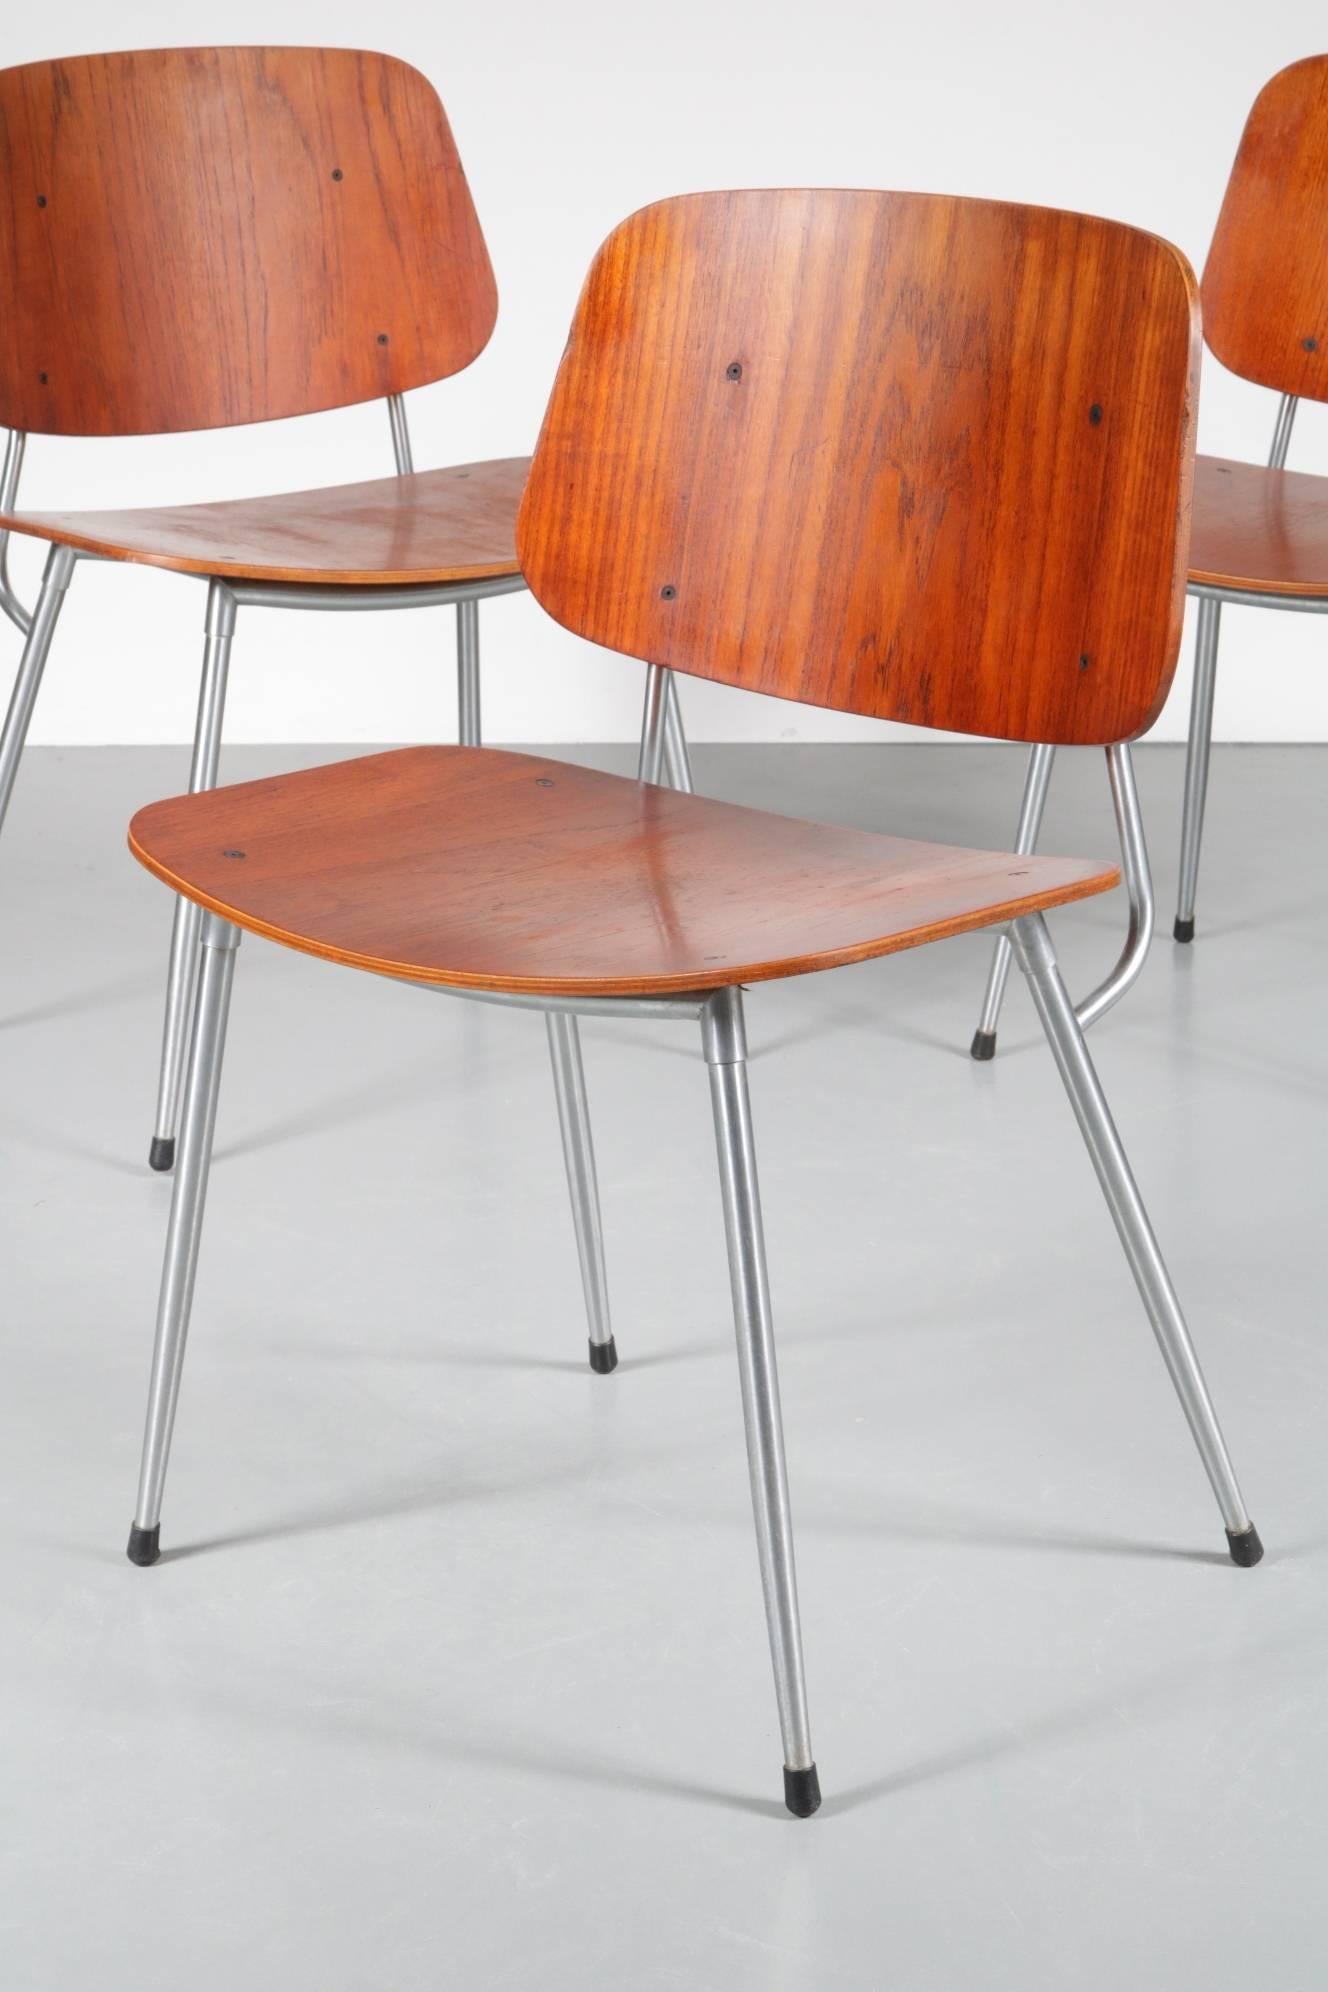 Stainless Steel Plywood Dining Chair by Børge Mogensen for Søborg Møbelfabrik, Denmark, 1953